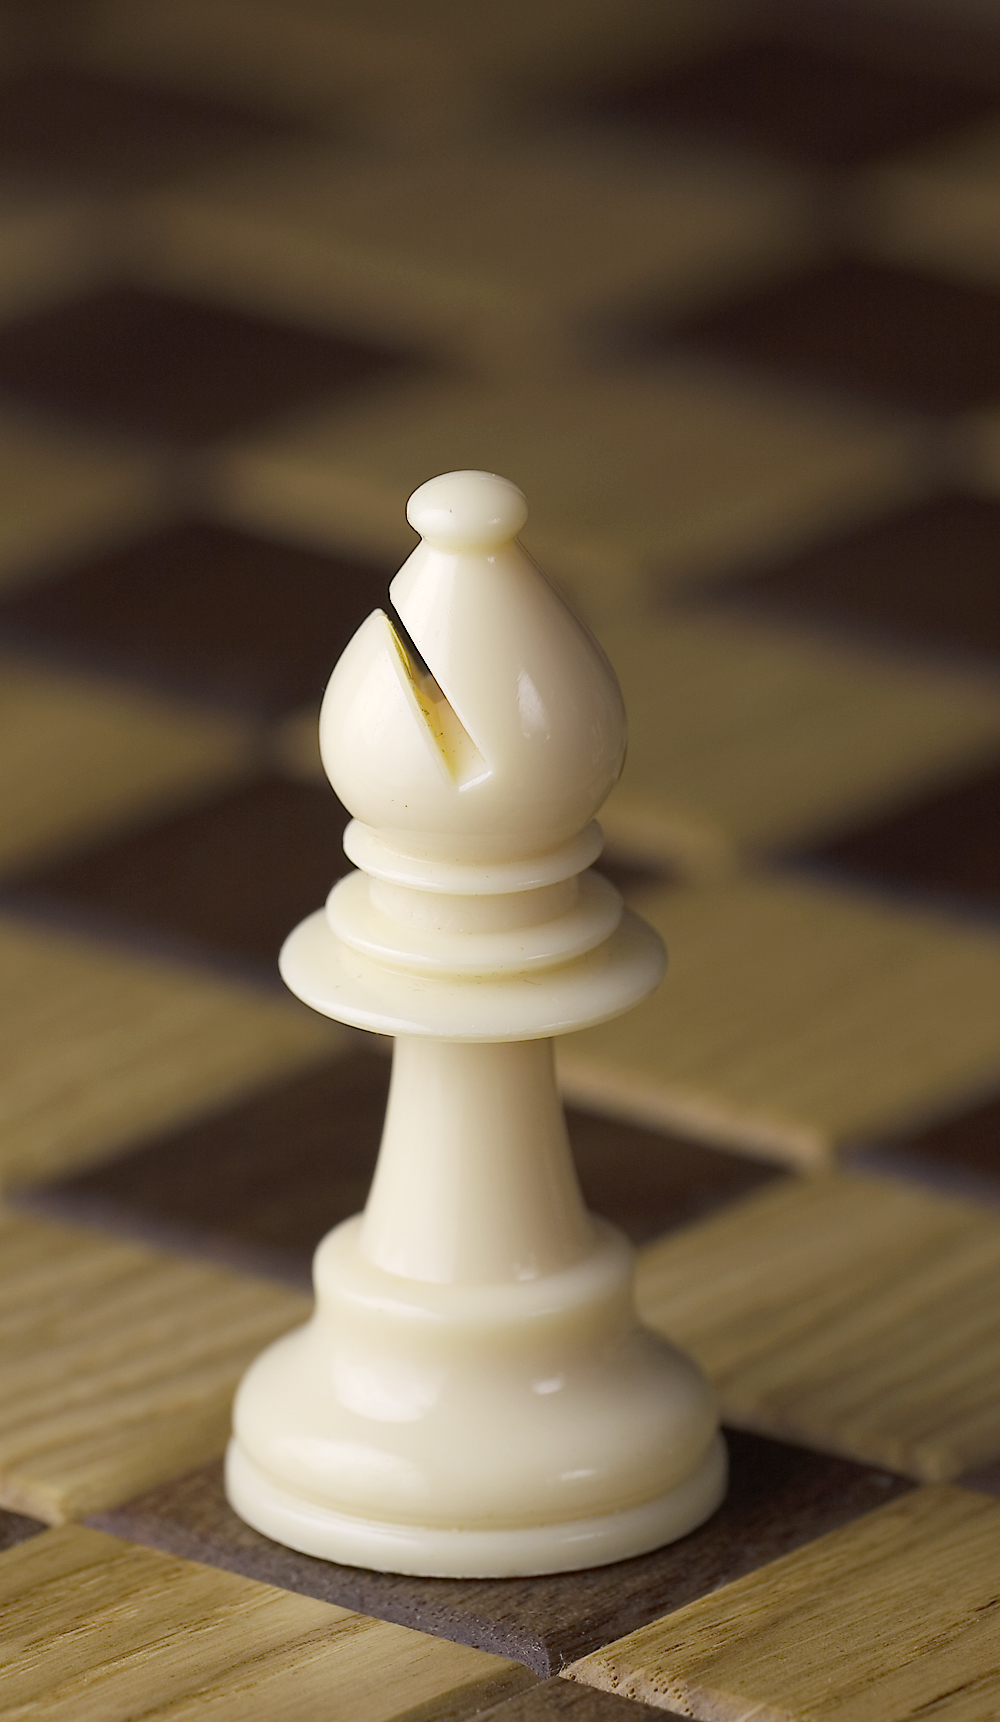 Chess_piece_-_White_bishop.JPG